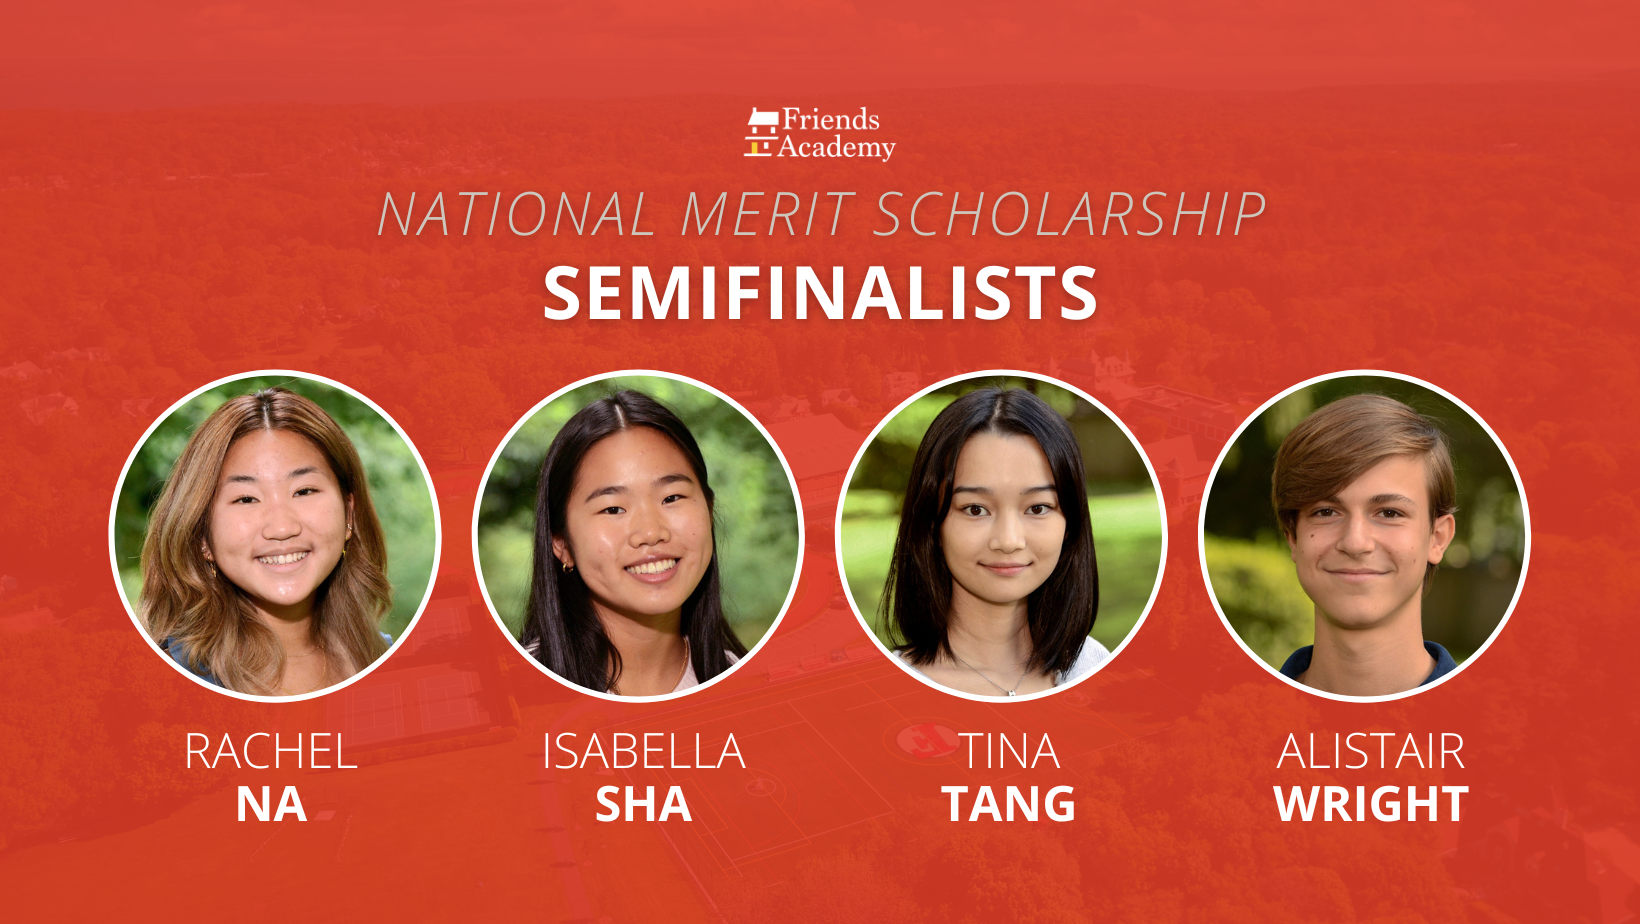 National Merit Semifinalists Rachel Na, Isabella Sha, Tina Tang, and Alistair Wright